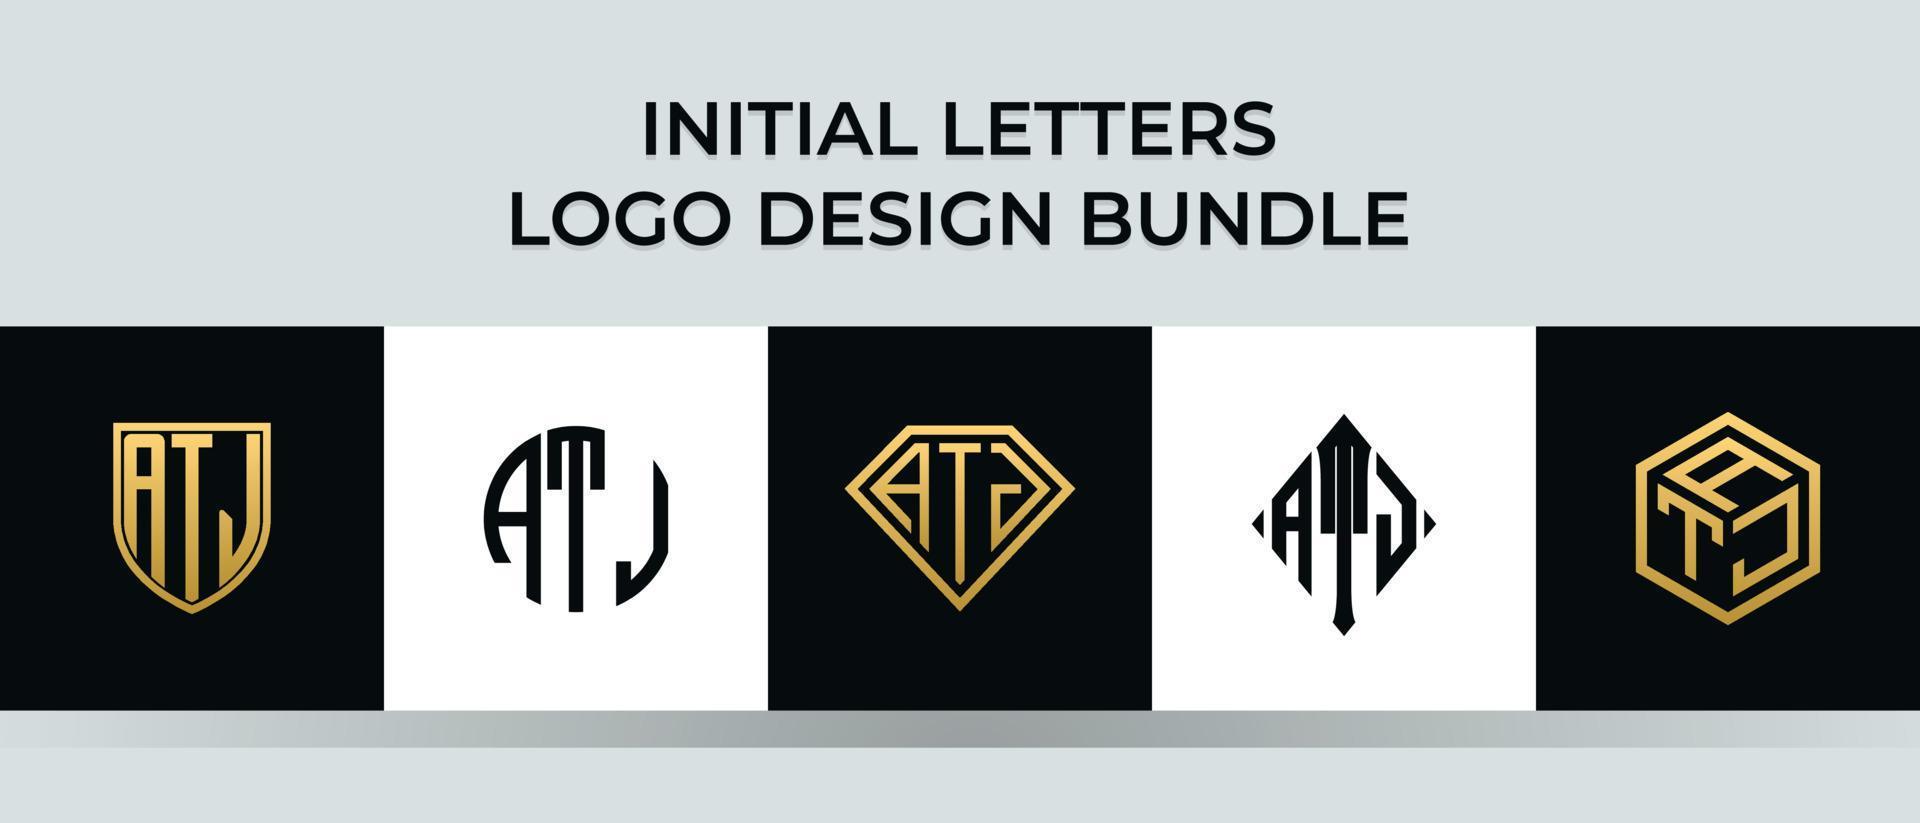 lettere iniziali atj logo design bundle vettore